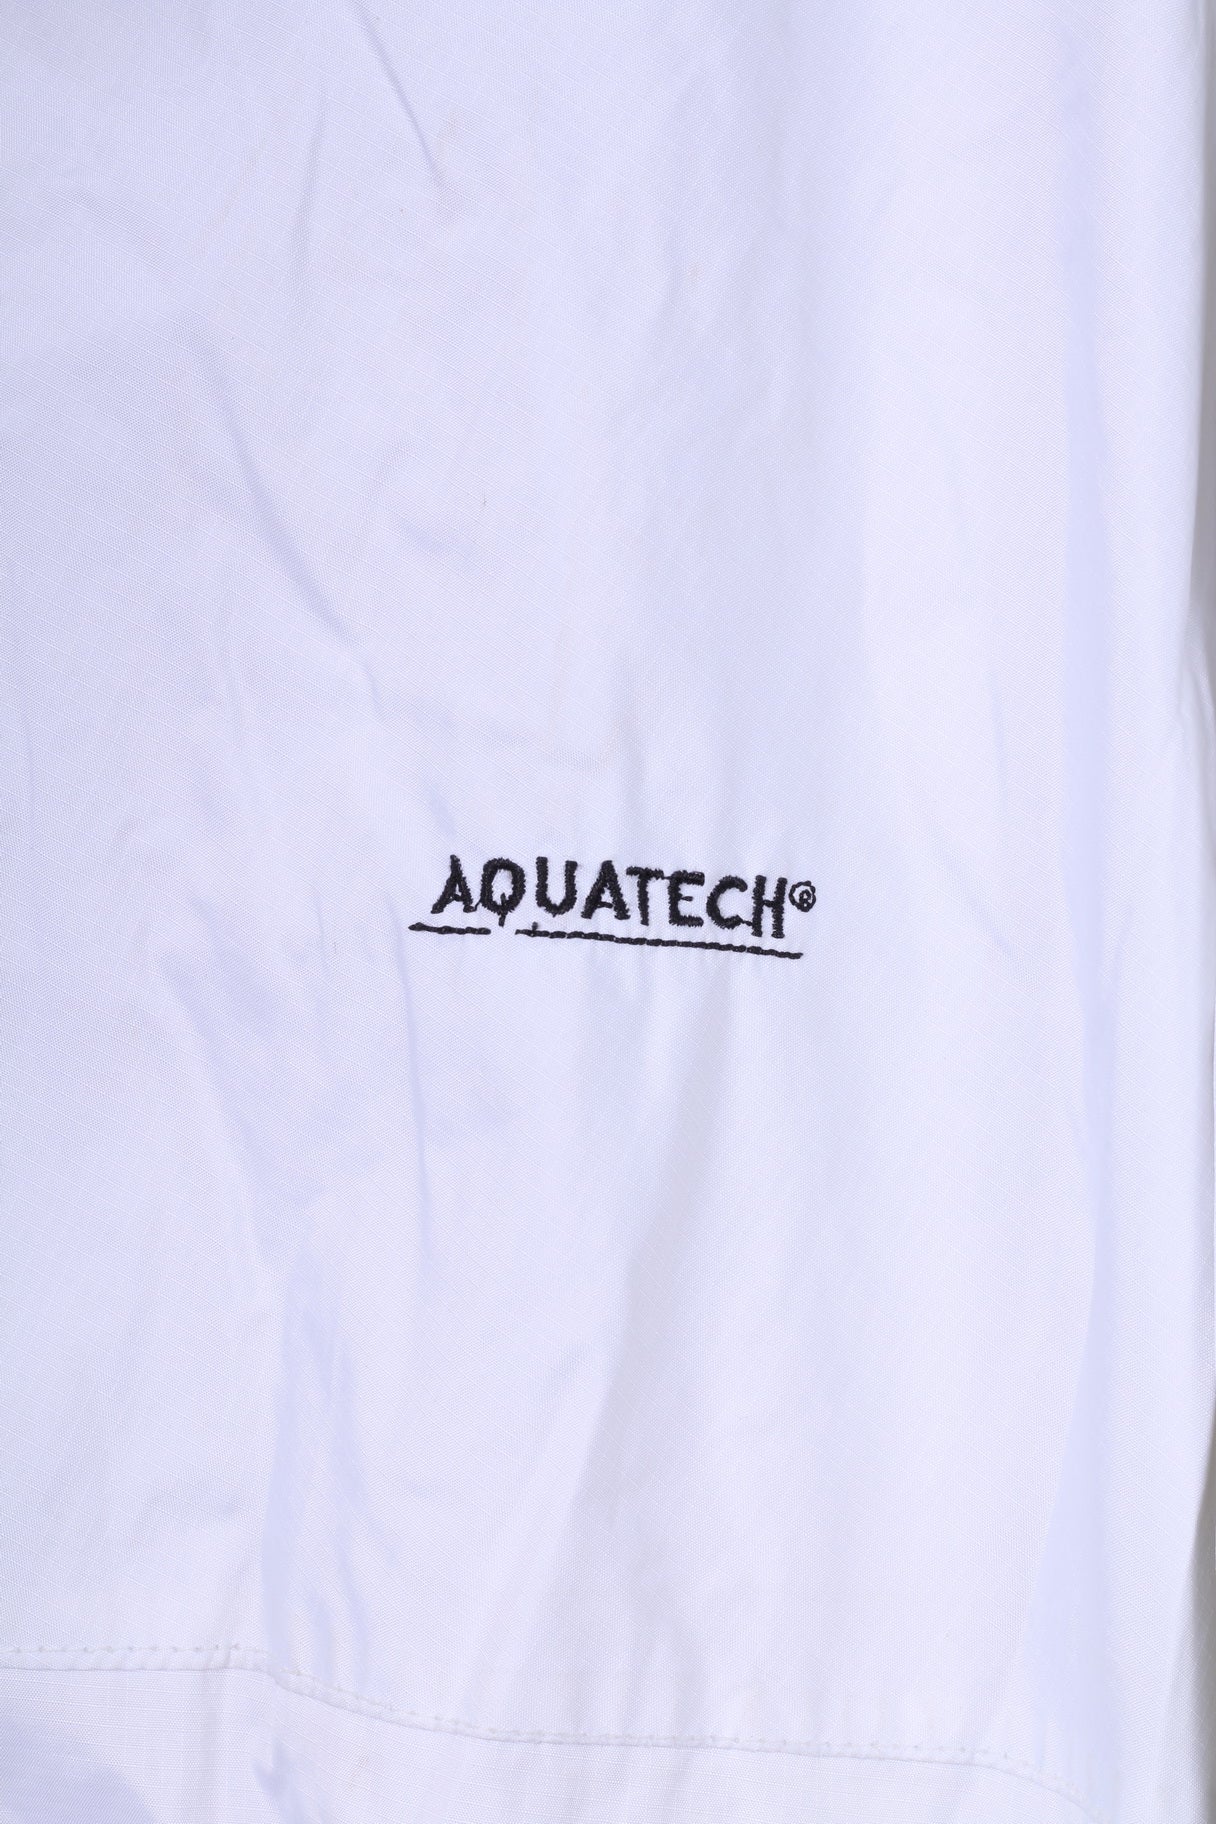 Giacca leggera Aquatech da uomo 2XL bianca con cerniera intera, impermeabile e traspirante